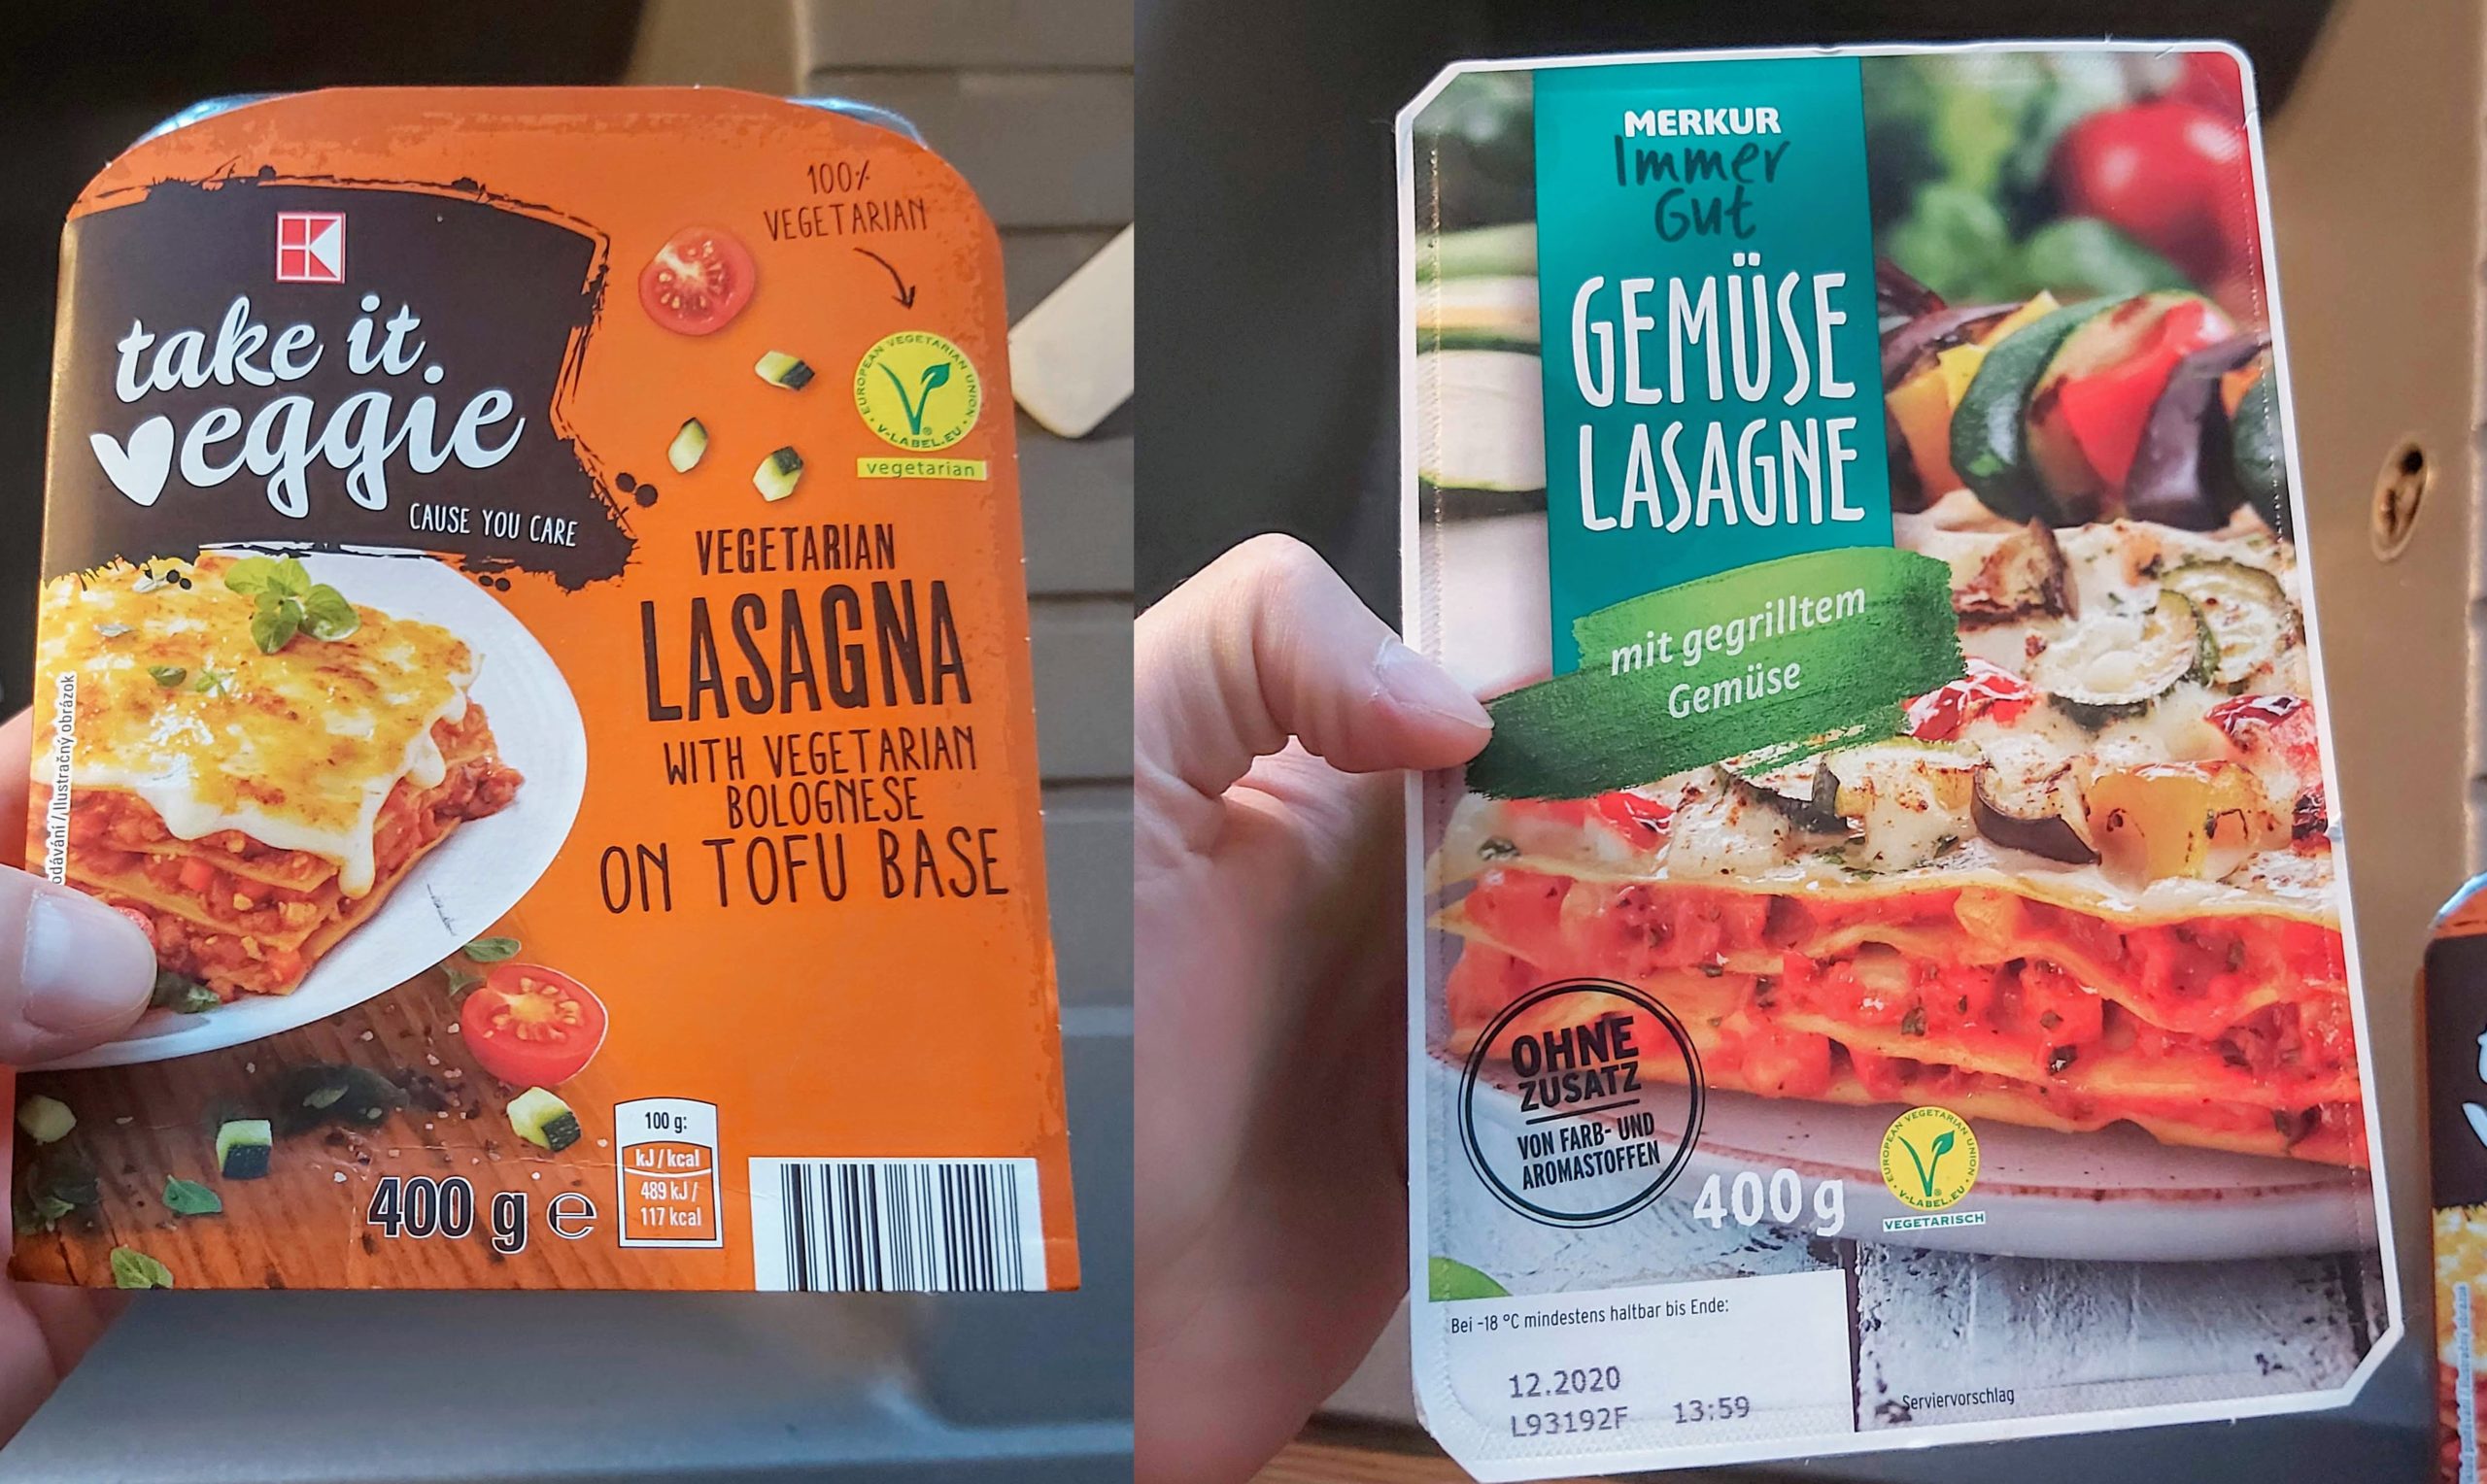 Vegetariánske lasagne - porovnanie dvoch polotovarových produktov -  